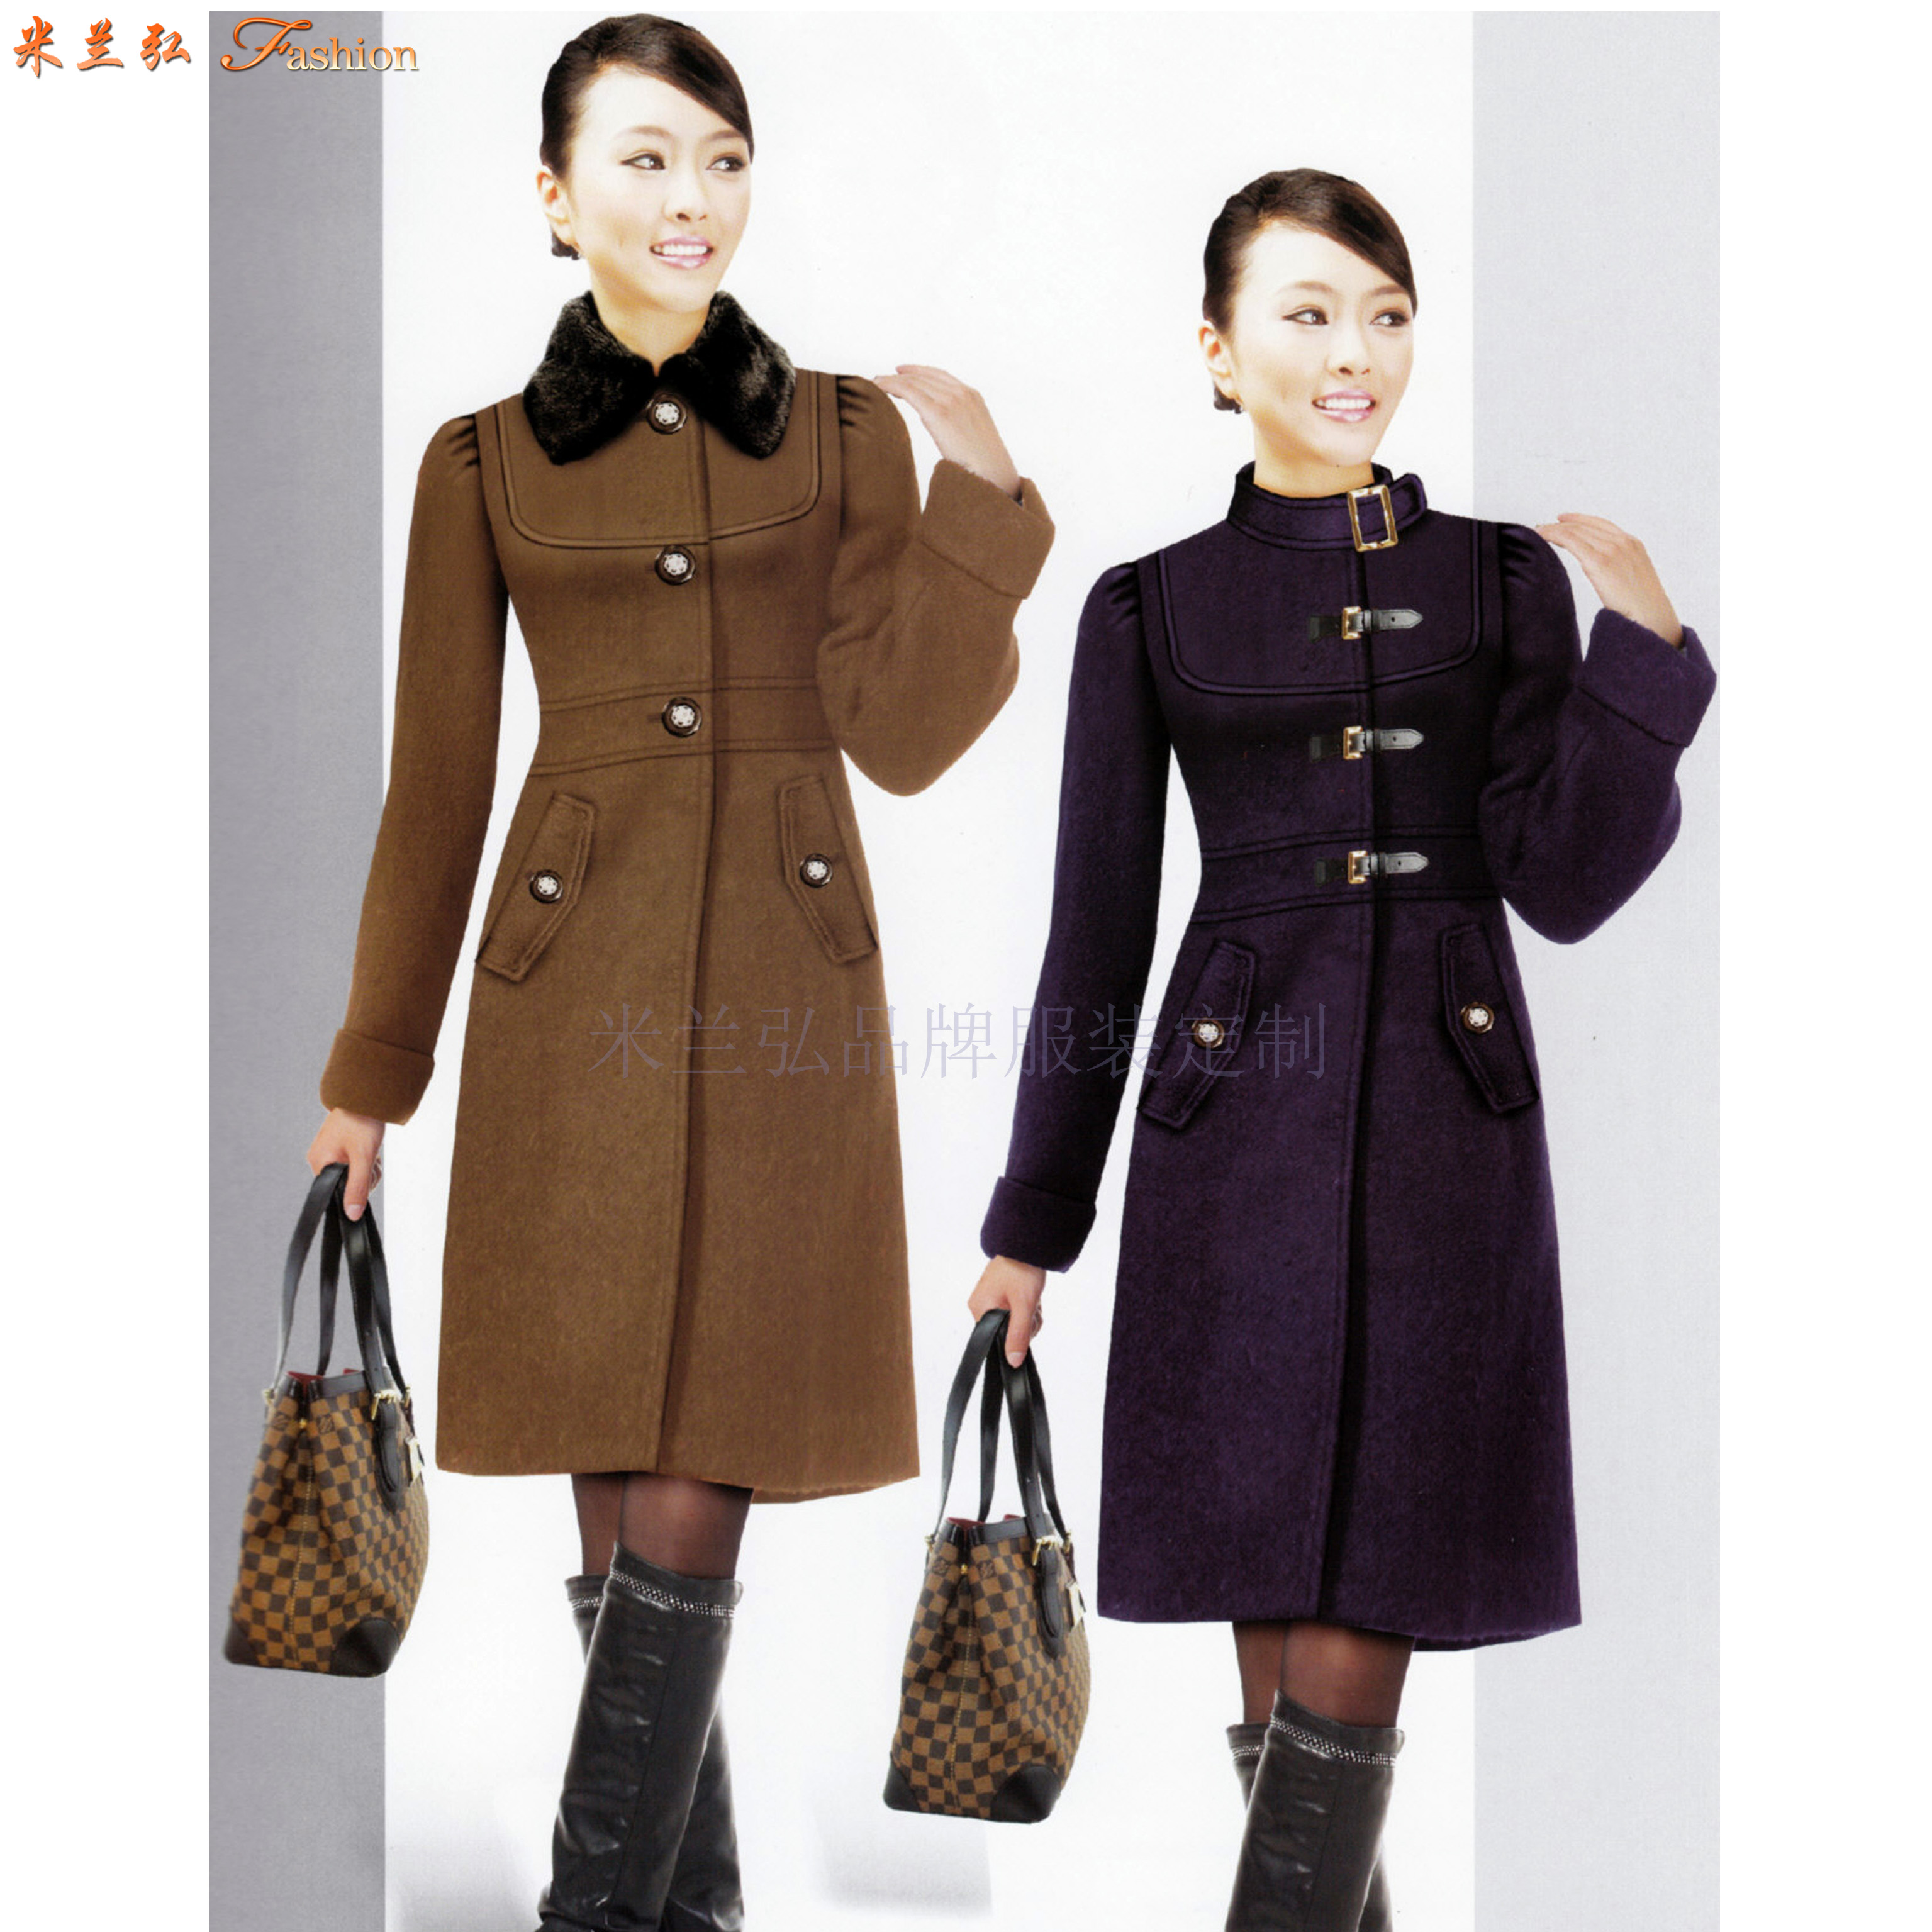 青岛正规大衣定制品牌-货真价实、式样时髦的呢子羊毛大衣厂家-3